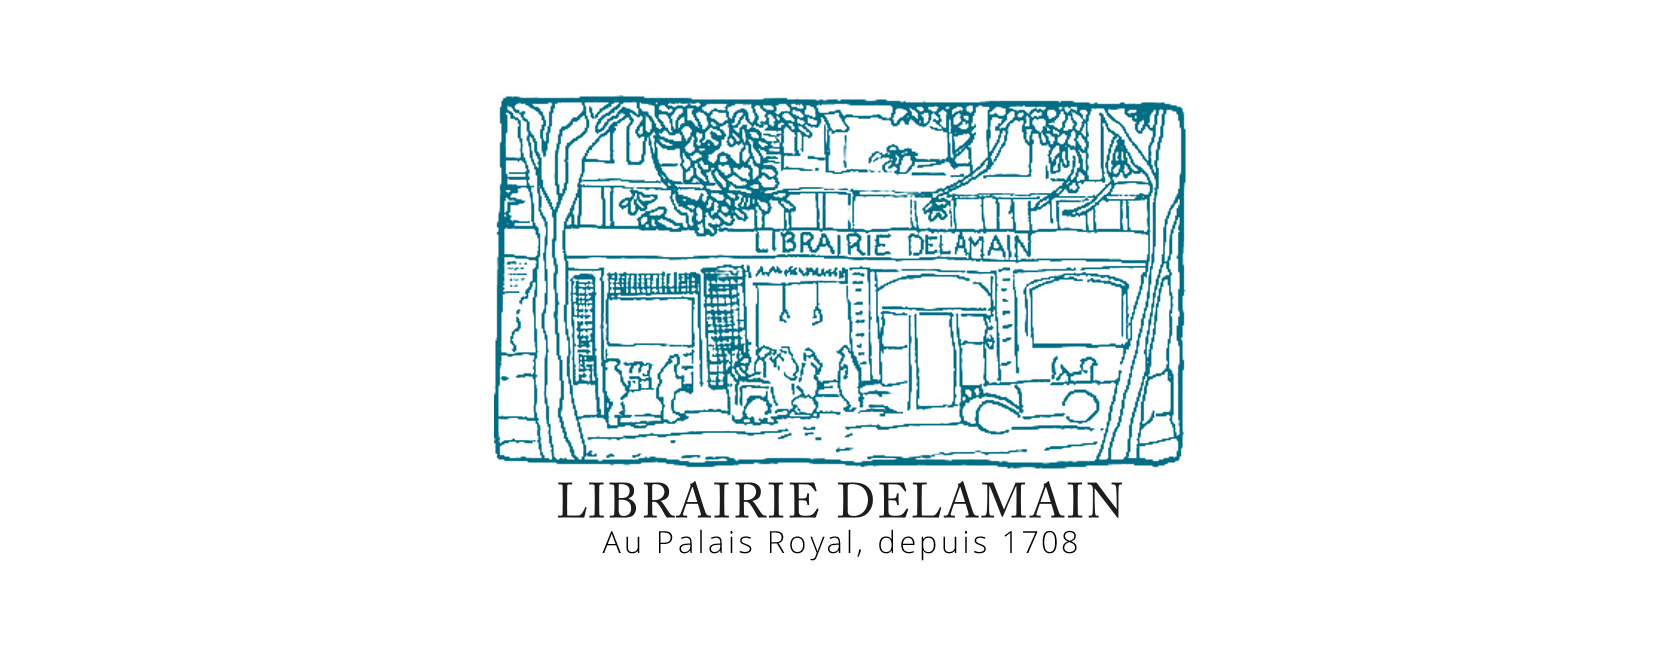 Librairie Le Square - Marion FAYOLLE Du Meme Bois Gallimard